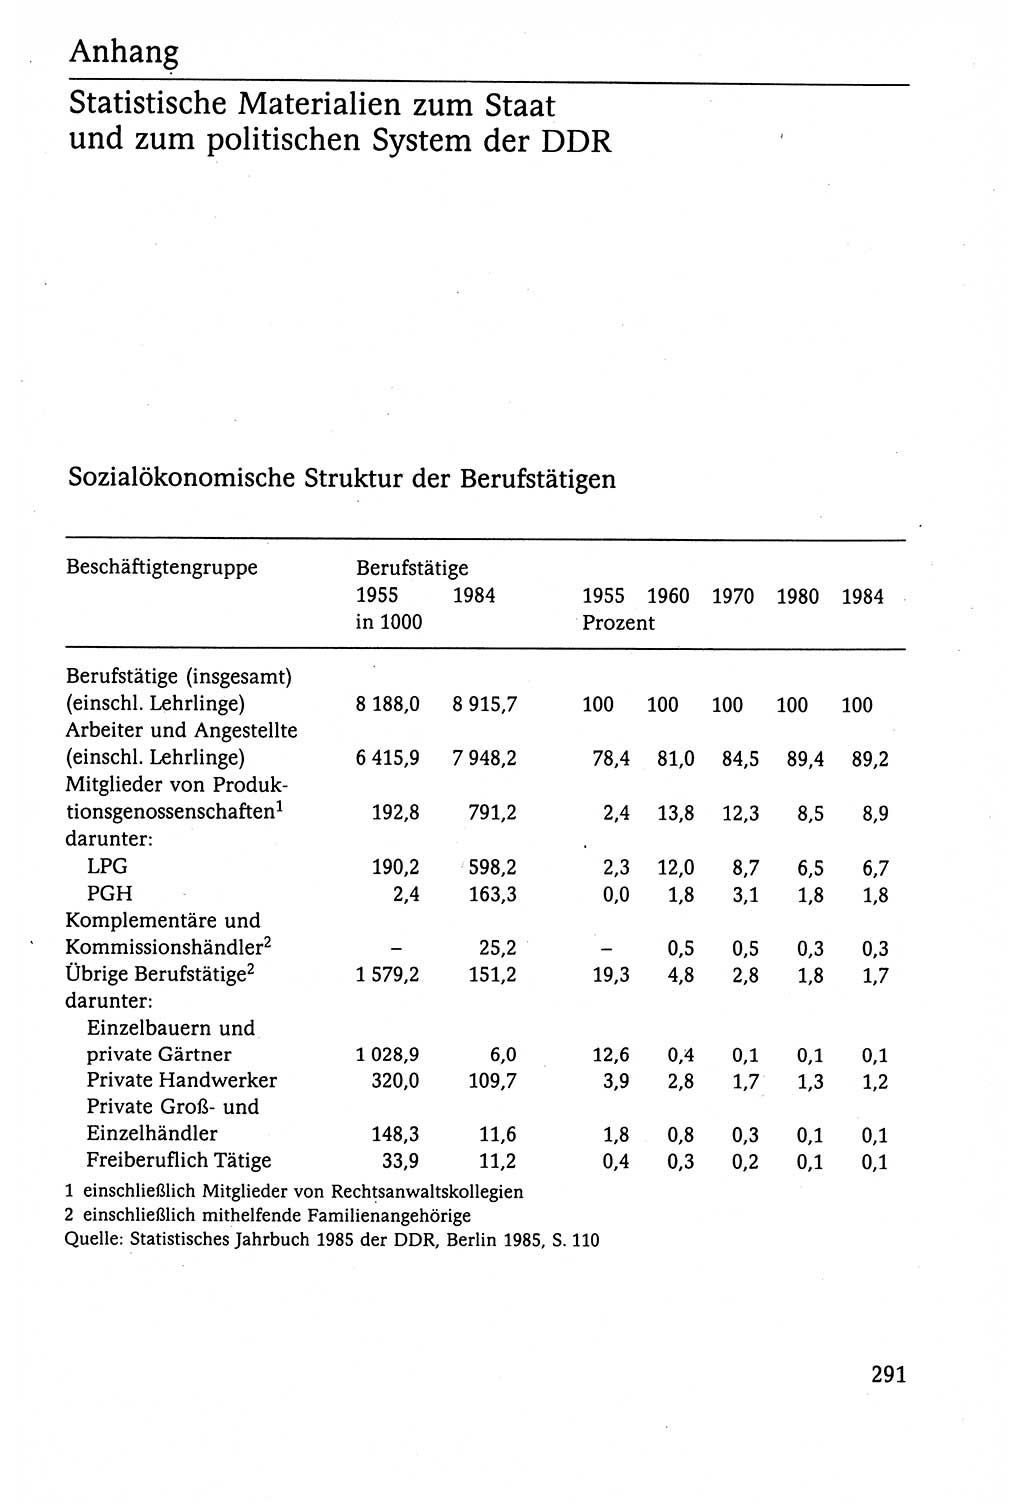 Der Staat im politischen System der DDR (Deutsche Demokratische Republik) 1986, Seite 291 (St. pol. Sys. DDR 1986, S. 291)